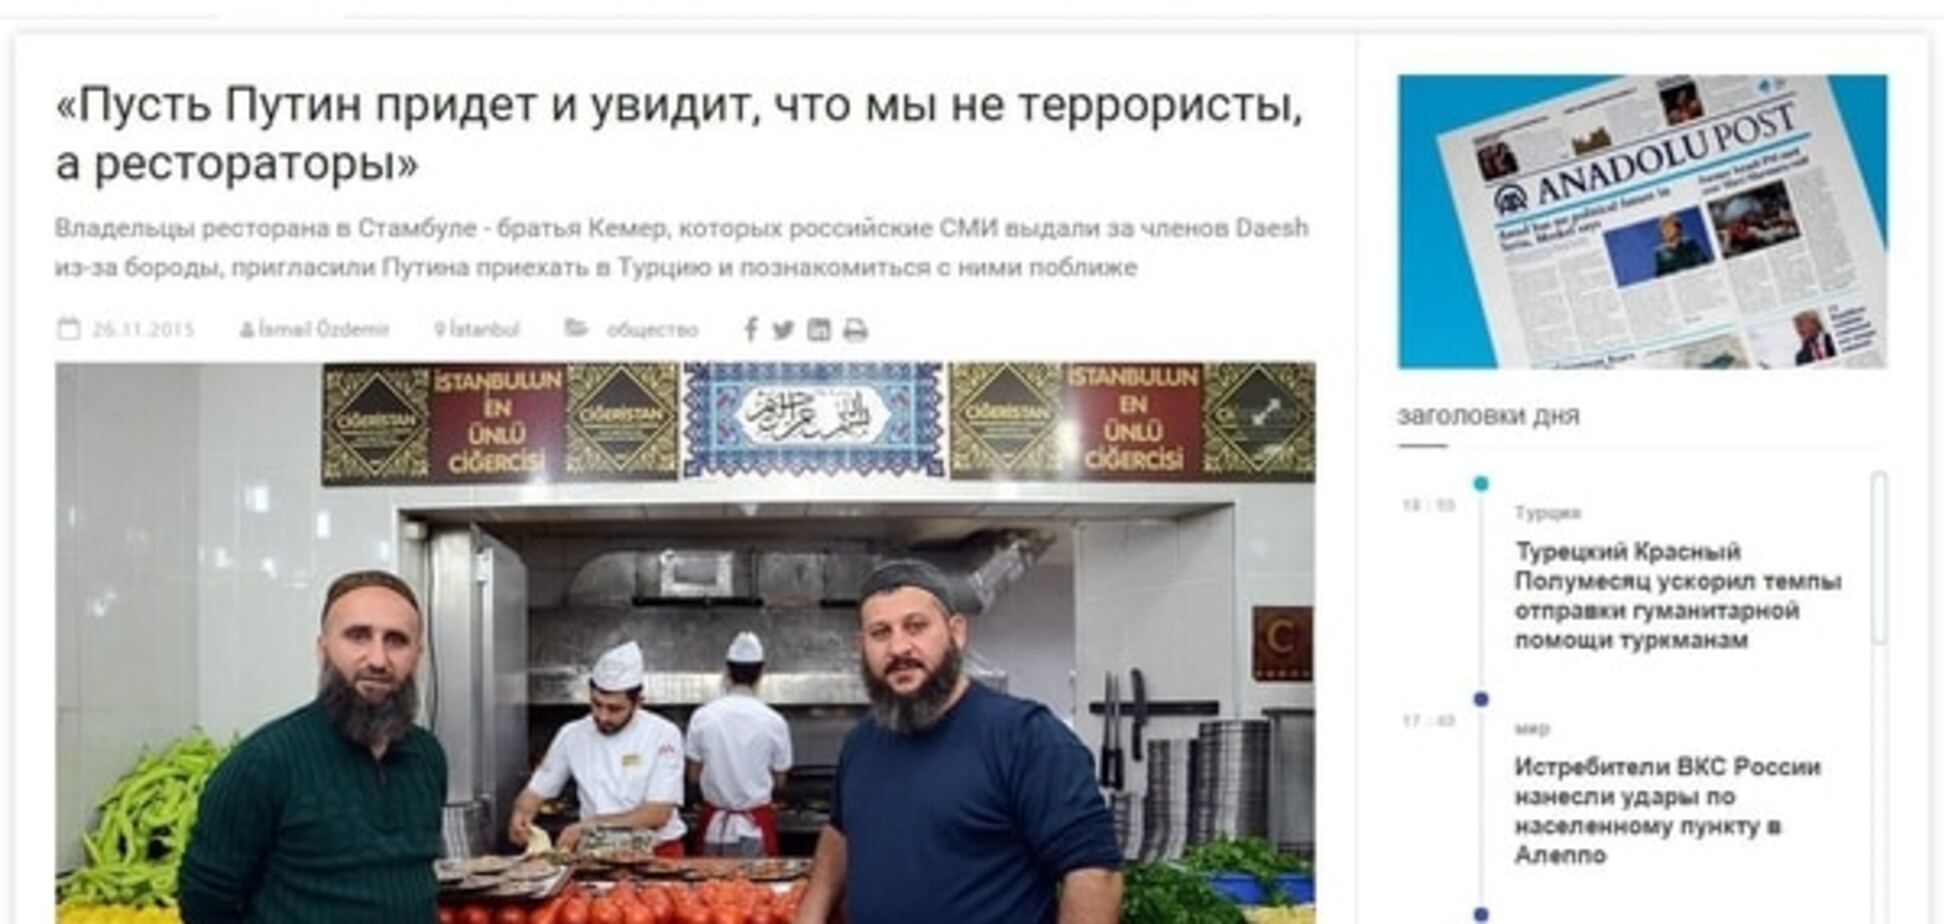 Якщо бородатий - значить терорист: російські ЗМІ видали рестораторів за ватажків ІДІЛ. Фотофакт